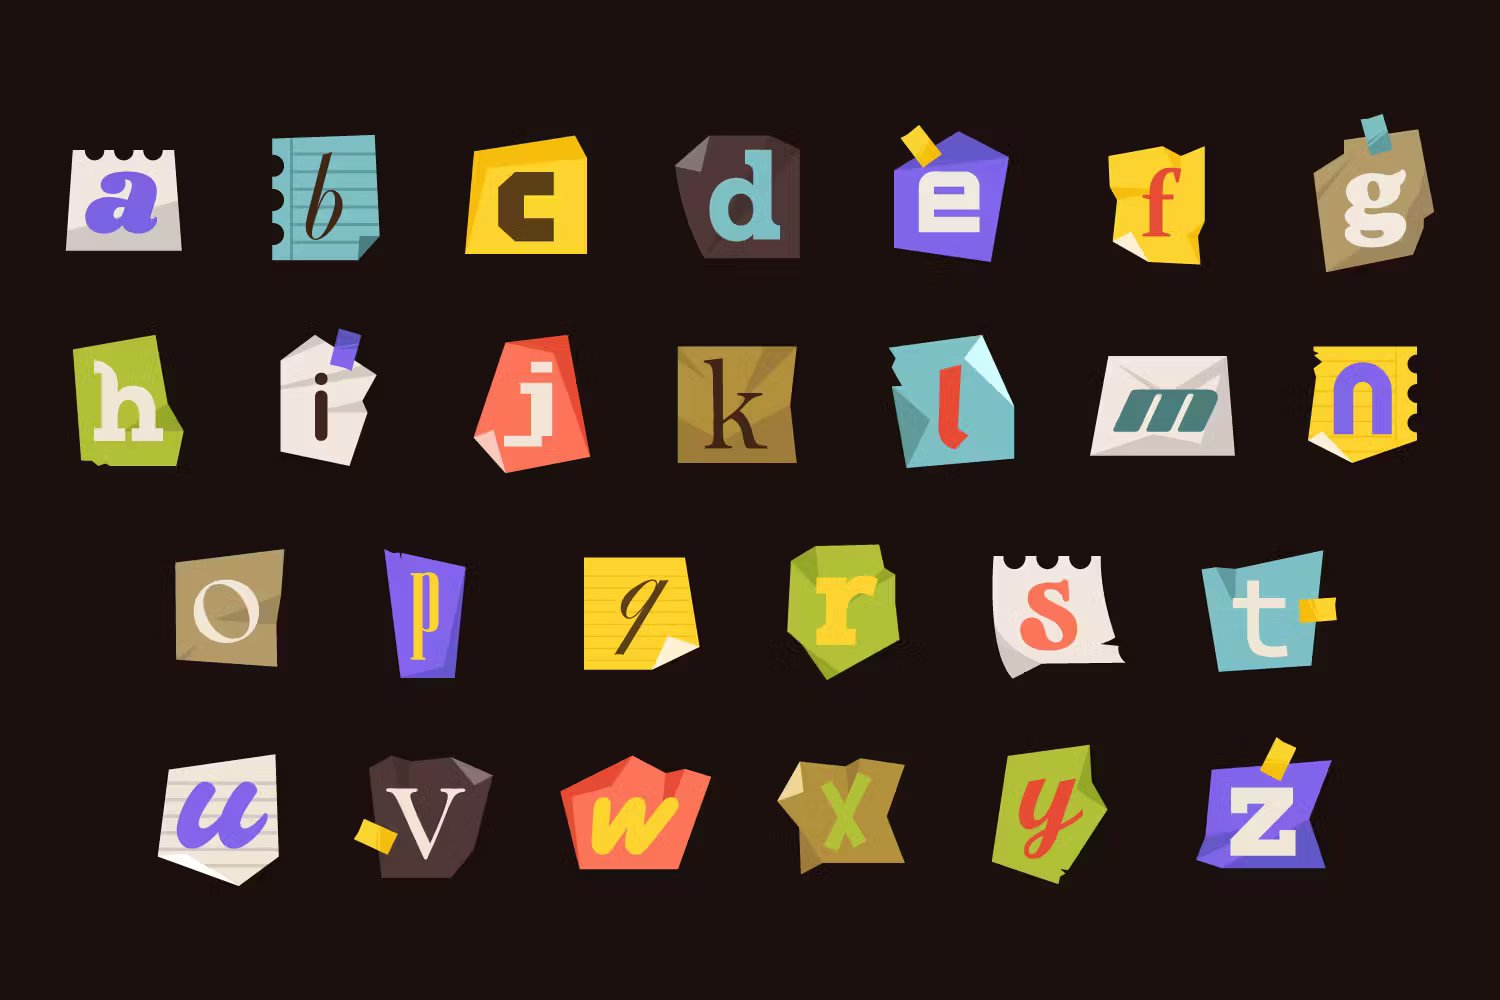 字母和数字/符号艺术拼贴海报杂志社交媒体设计元素PNG/AI Letter Cutout Magazine Texture Ransom 图片素材 第4张